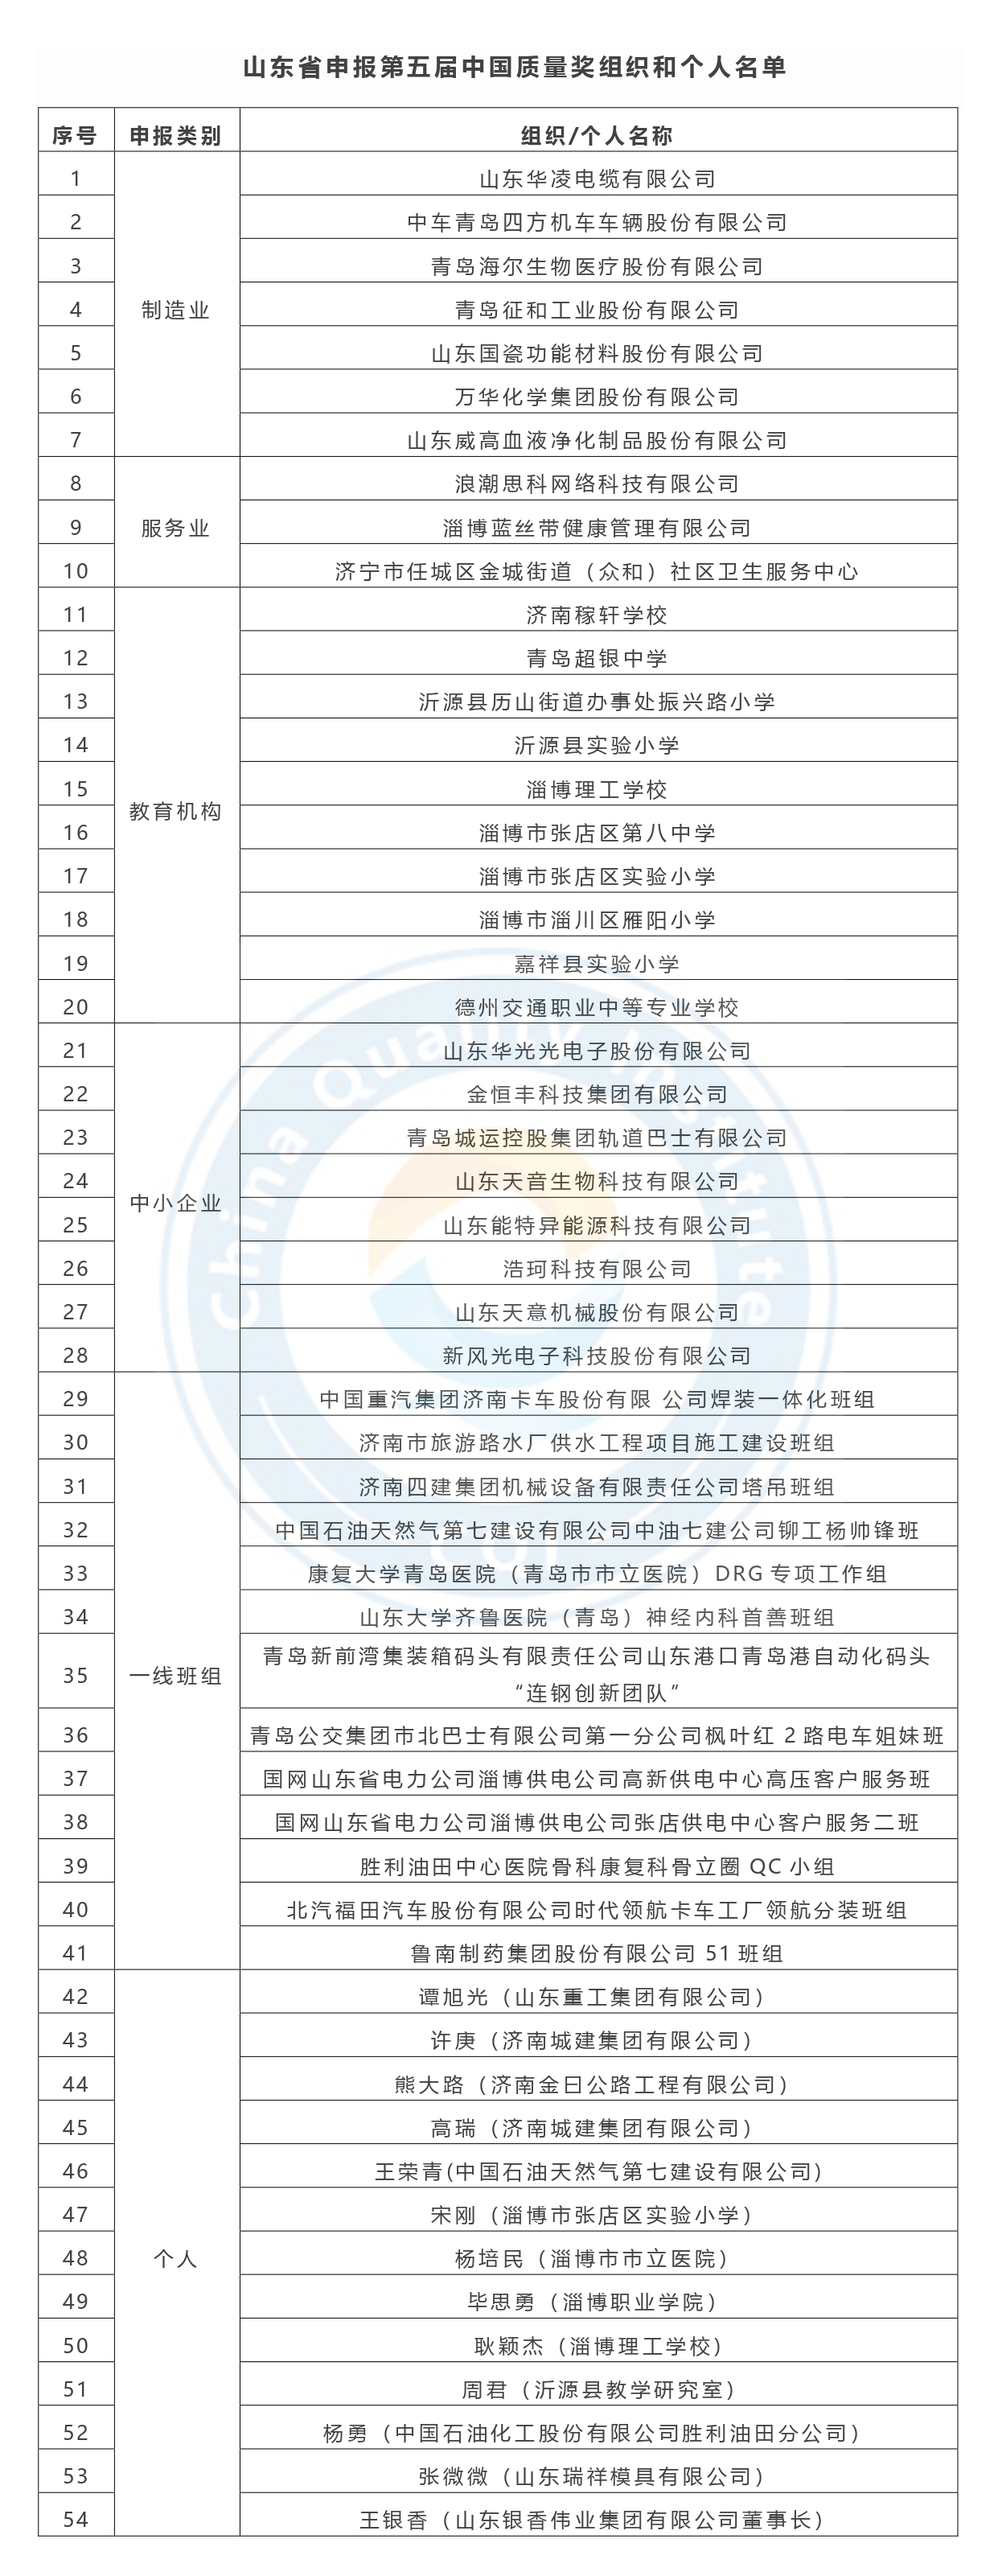 第五届中国质量奖申报名单公示-山东省.jpg